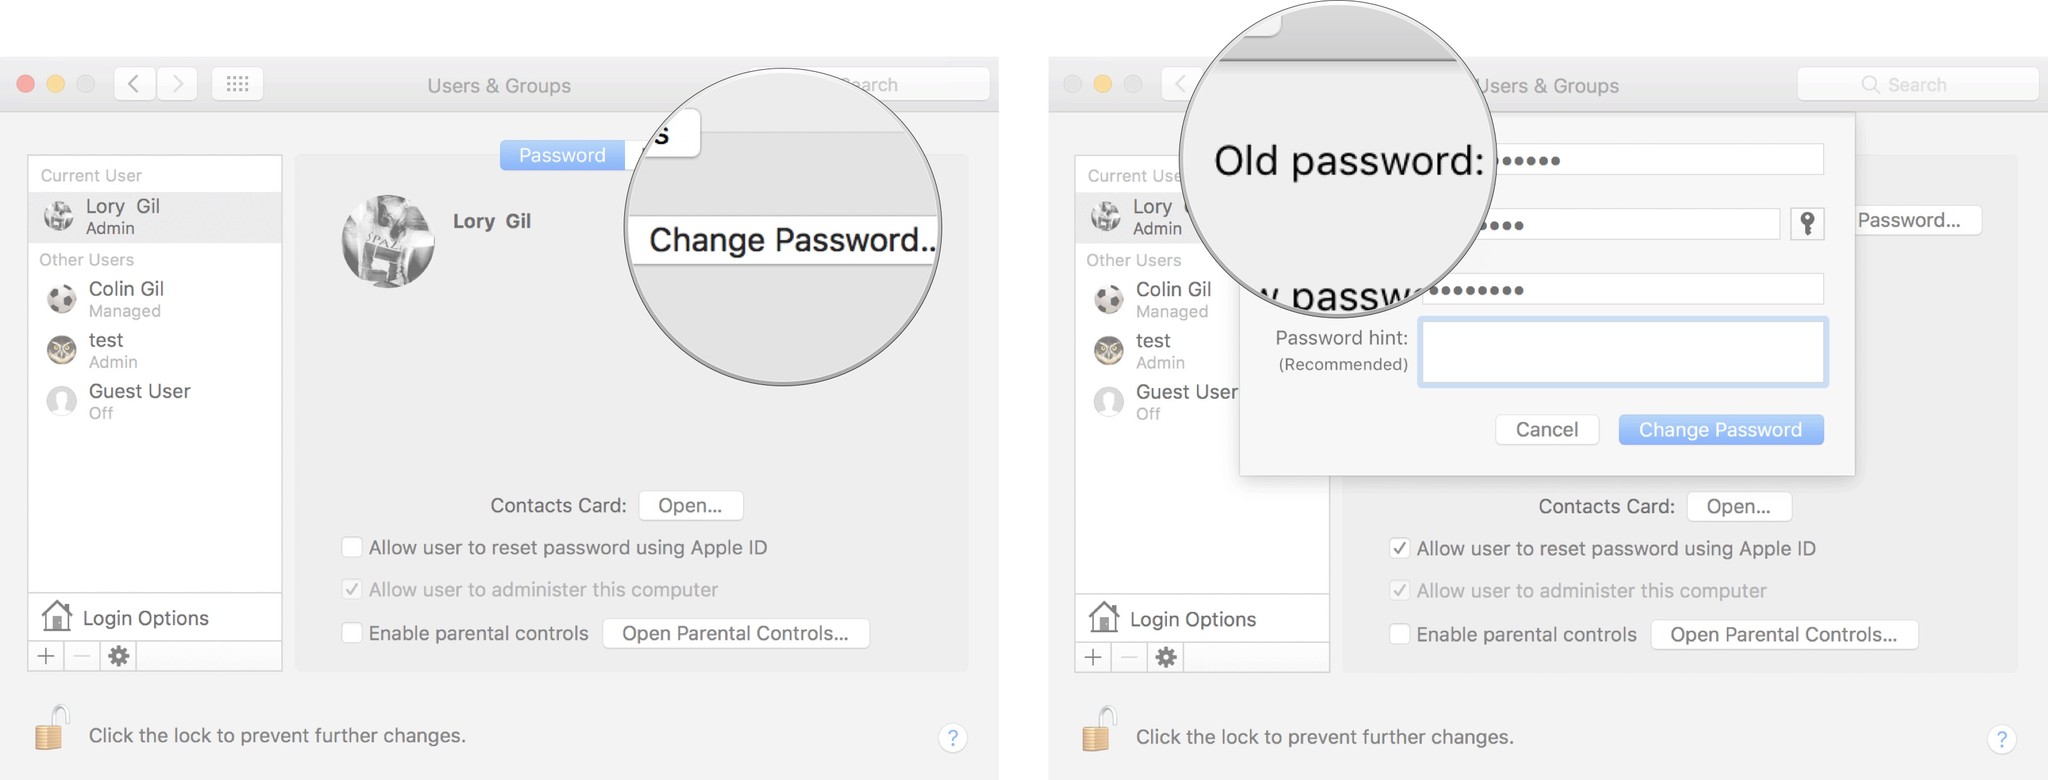 нажмите изменить пароль, затем введите свой старый пароль